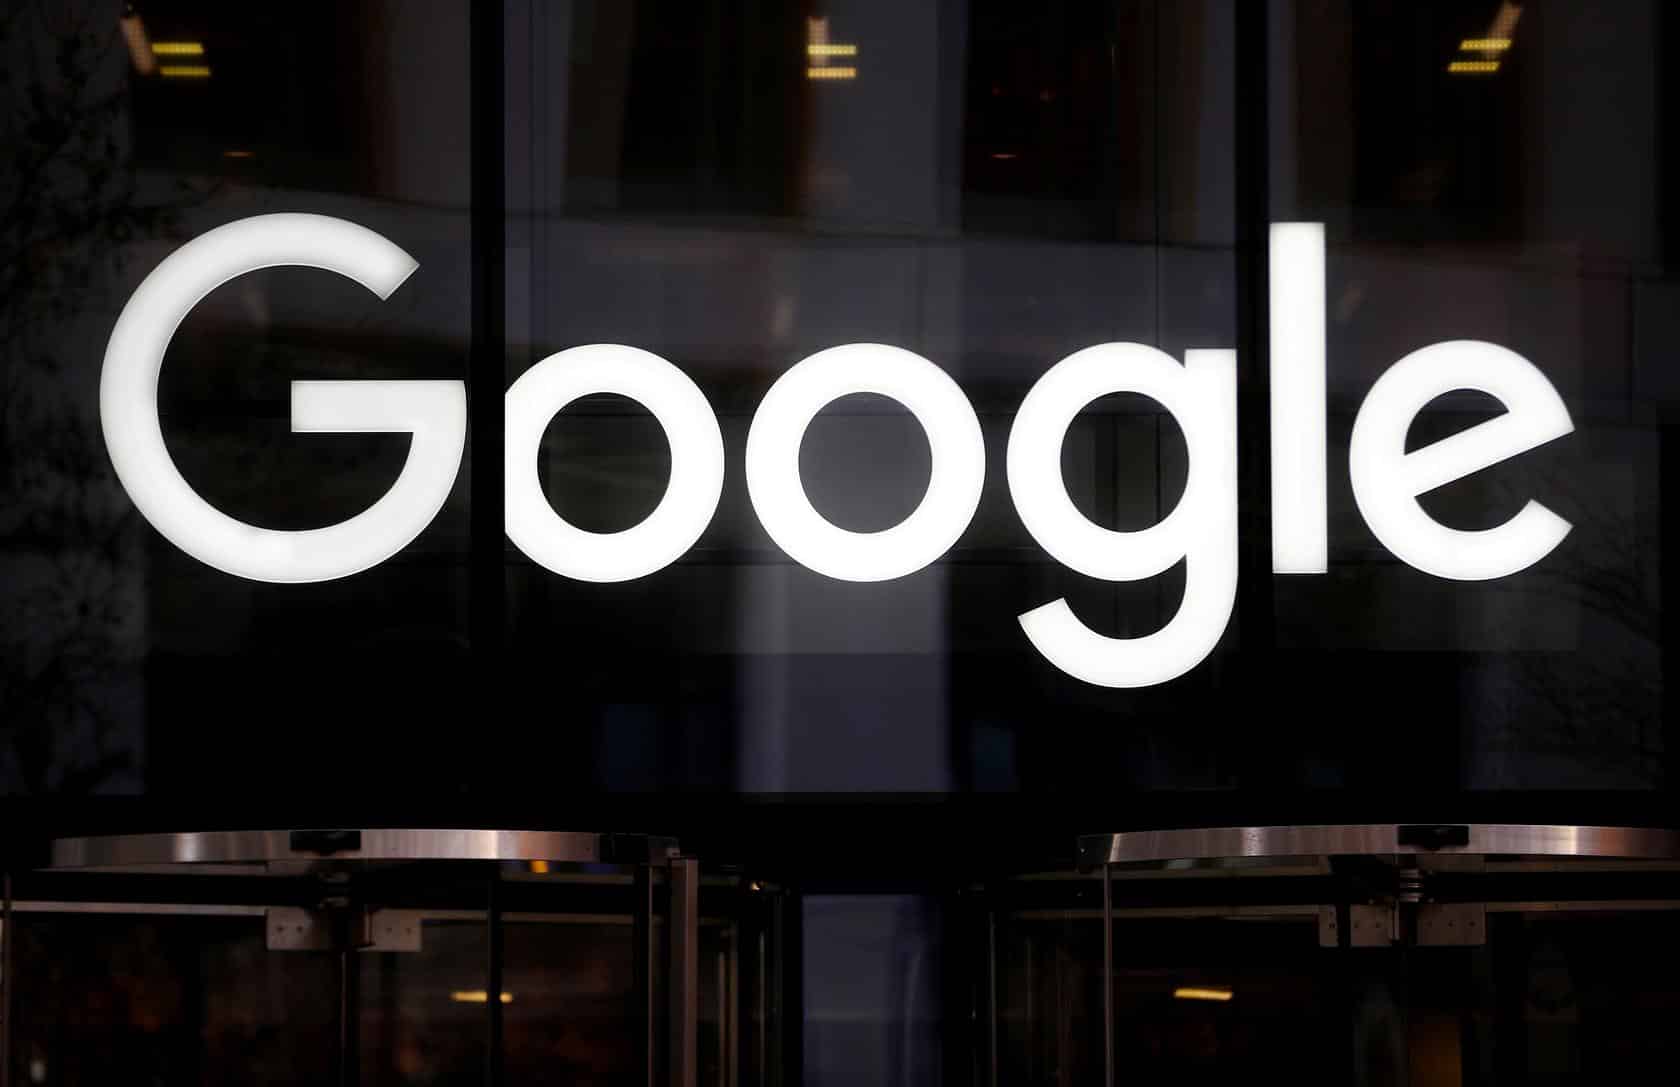 جوجل تنقل معركة جافا مع أوراكل إلى المحكمة العليا